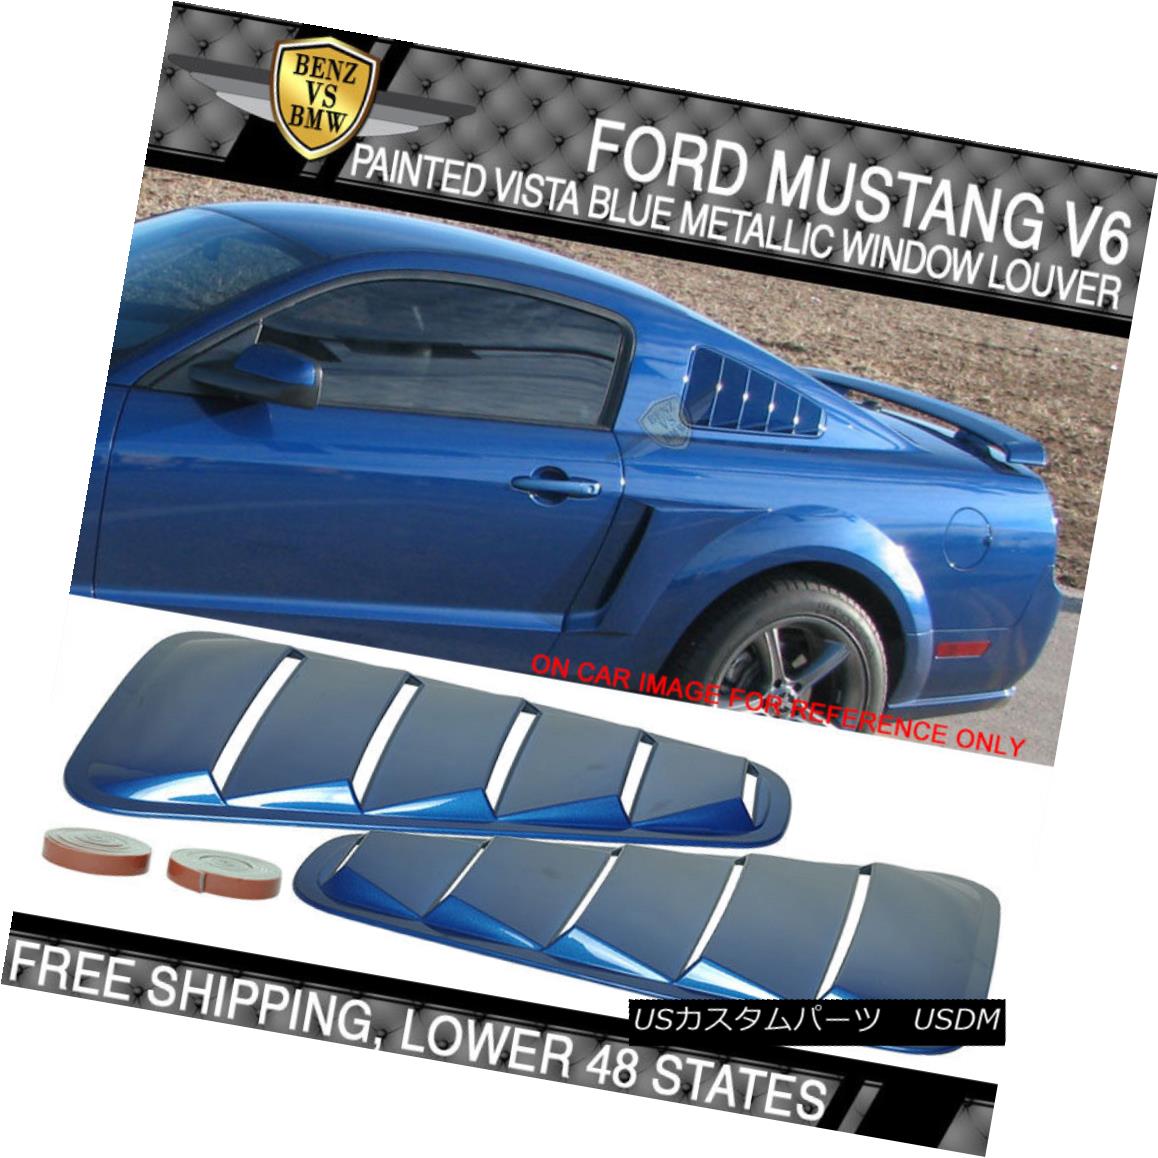 エアロパーツ USA STOCK 05-09 Mustang V6 Painted # G9 Vista Blue Metallic Window Louver - ABS USA在庫05-09マスタングV6塗装＃G9ビスタブルーメタリックウィンドウルーバー - ABS